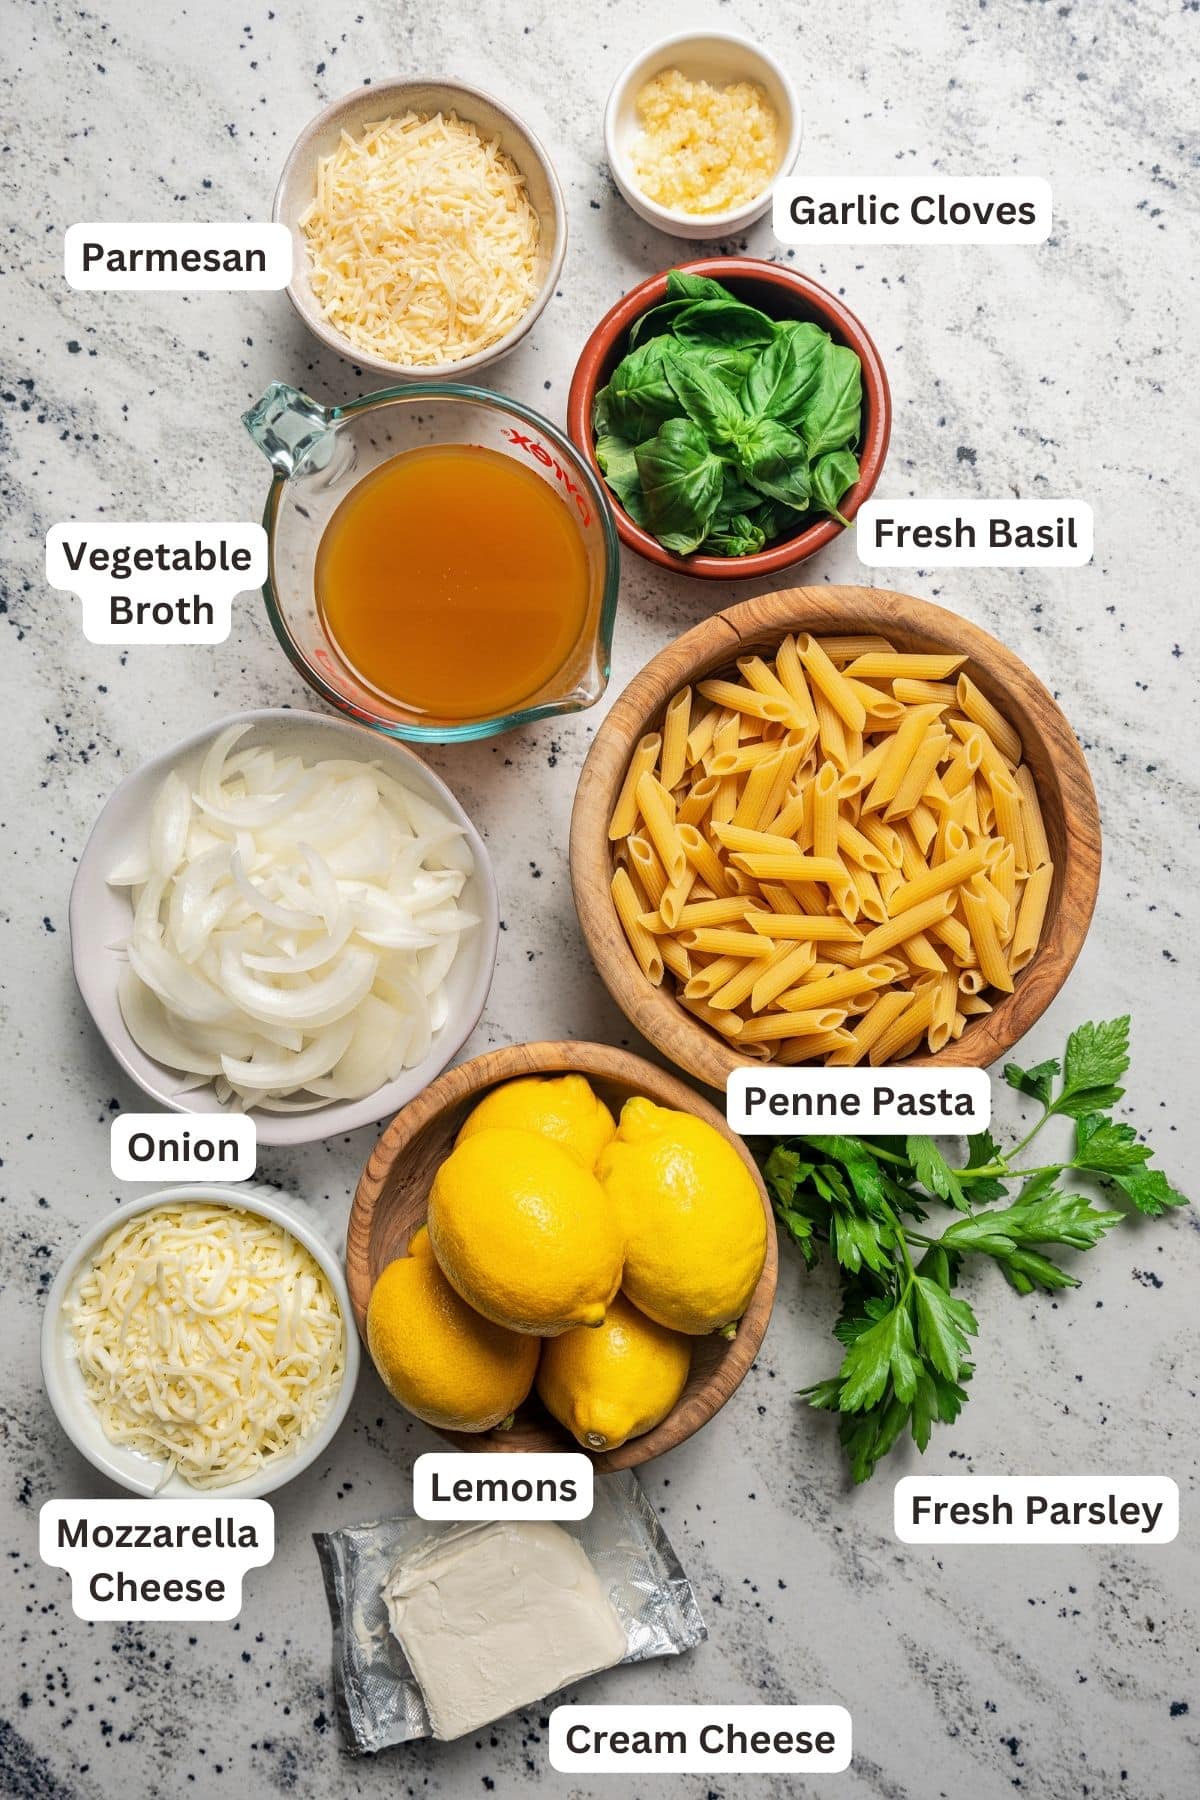 Ingredients for lemon pasta recipe.